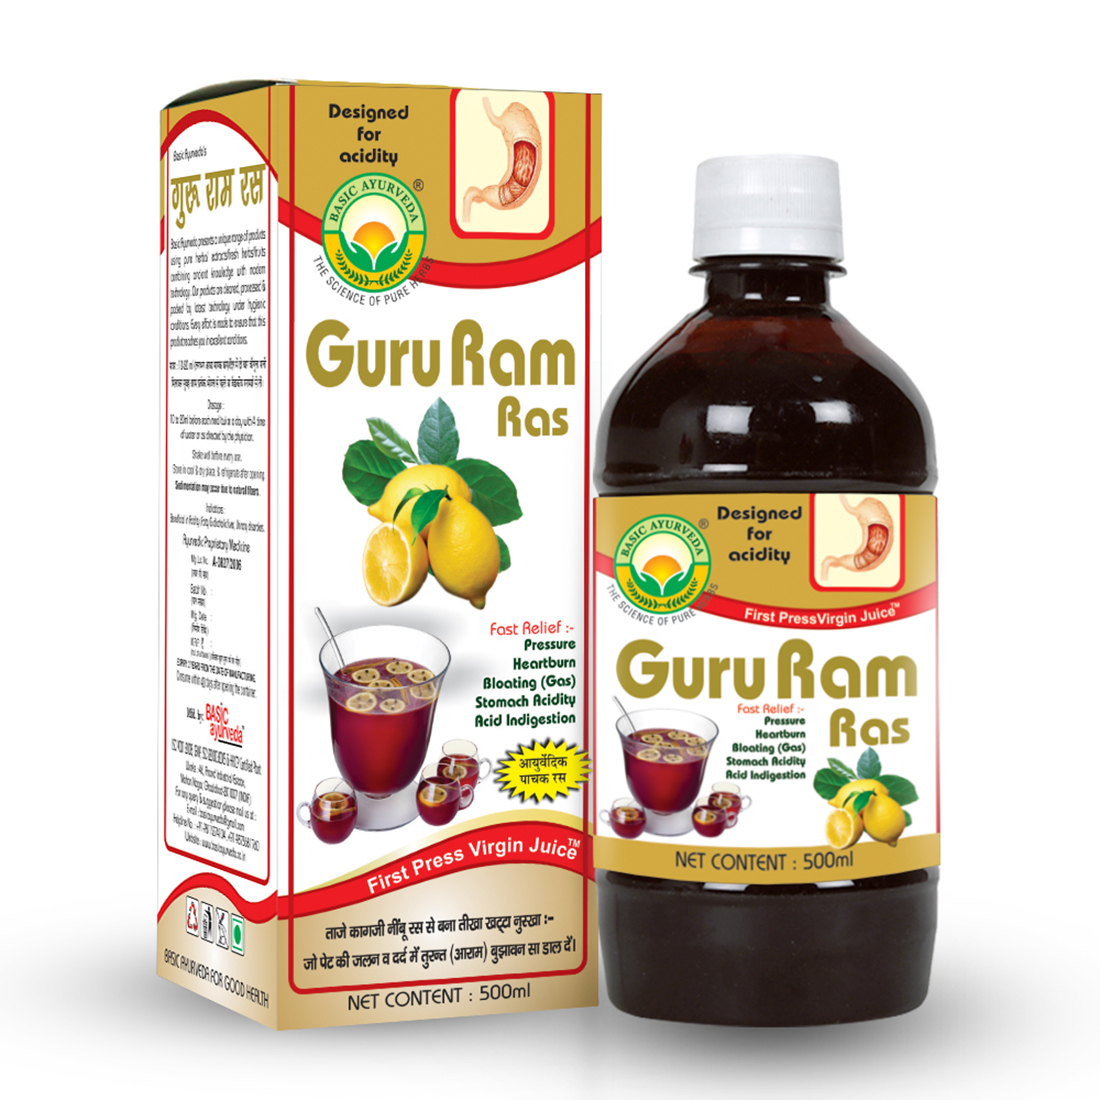 Guru Ram Ras